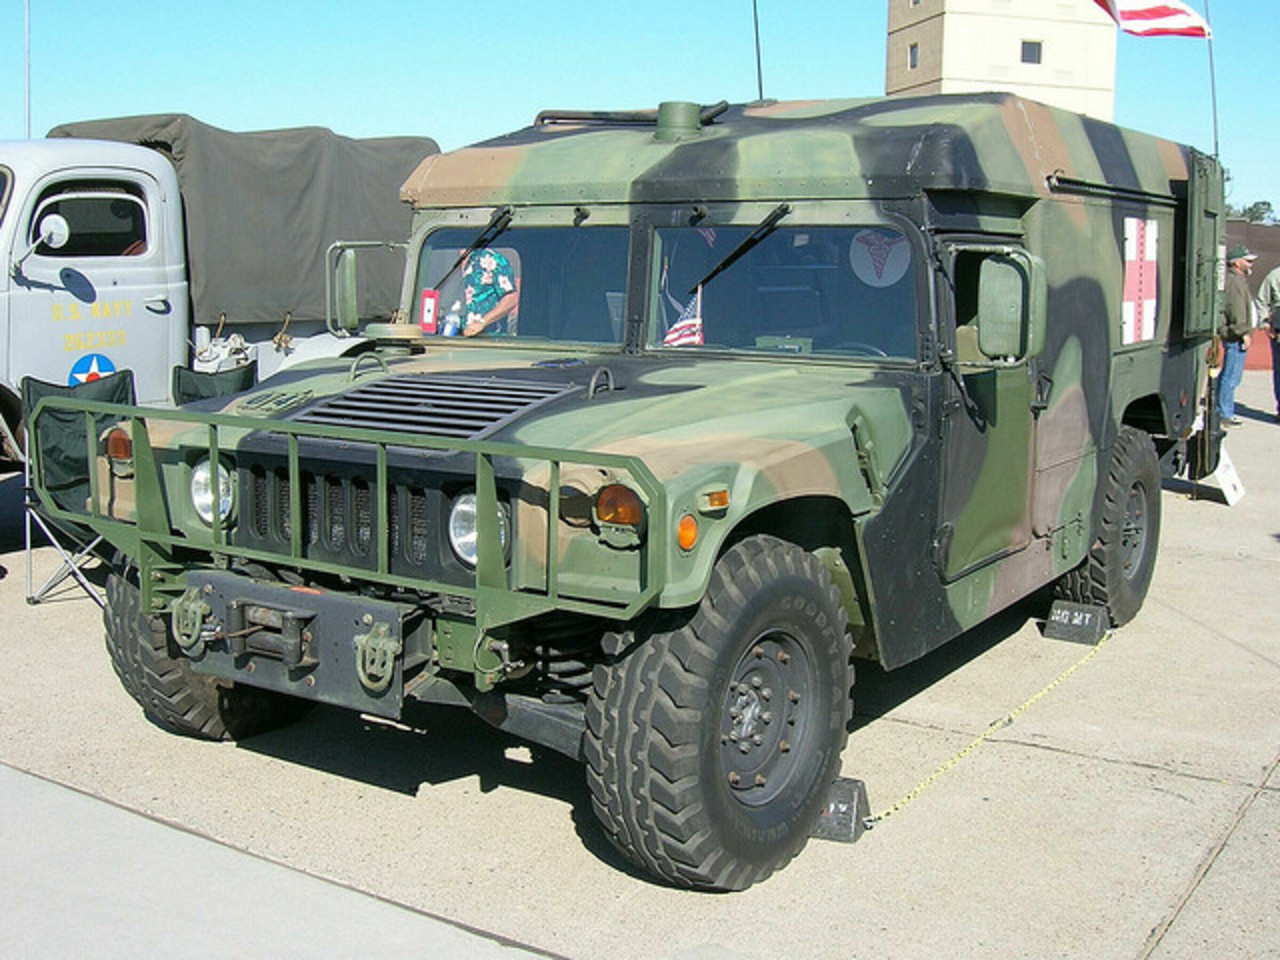 General Motors Hummer Ambulance 1 | Flickr - Photo Sharing!